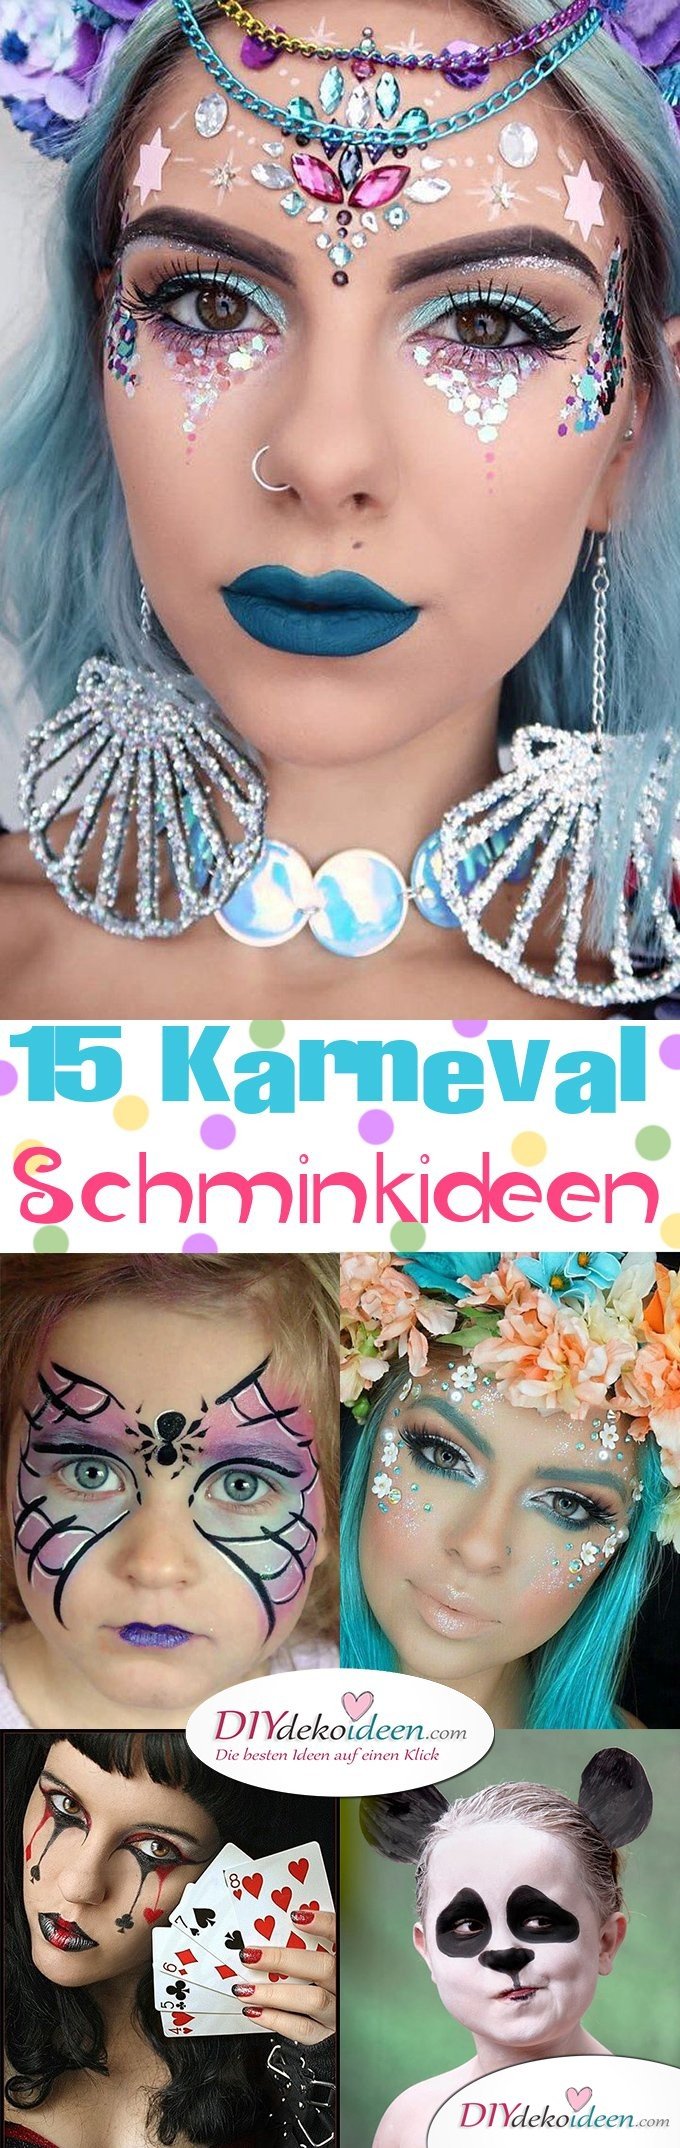 15+ Karneval Schminkideen, Fee Make up, Karneval, Schminktipps, Fasching Schminken, Make up Fasching, Karneval Kostüm Ideen, 